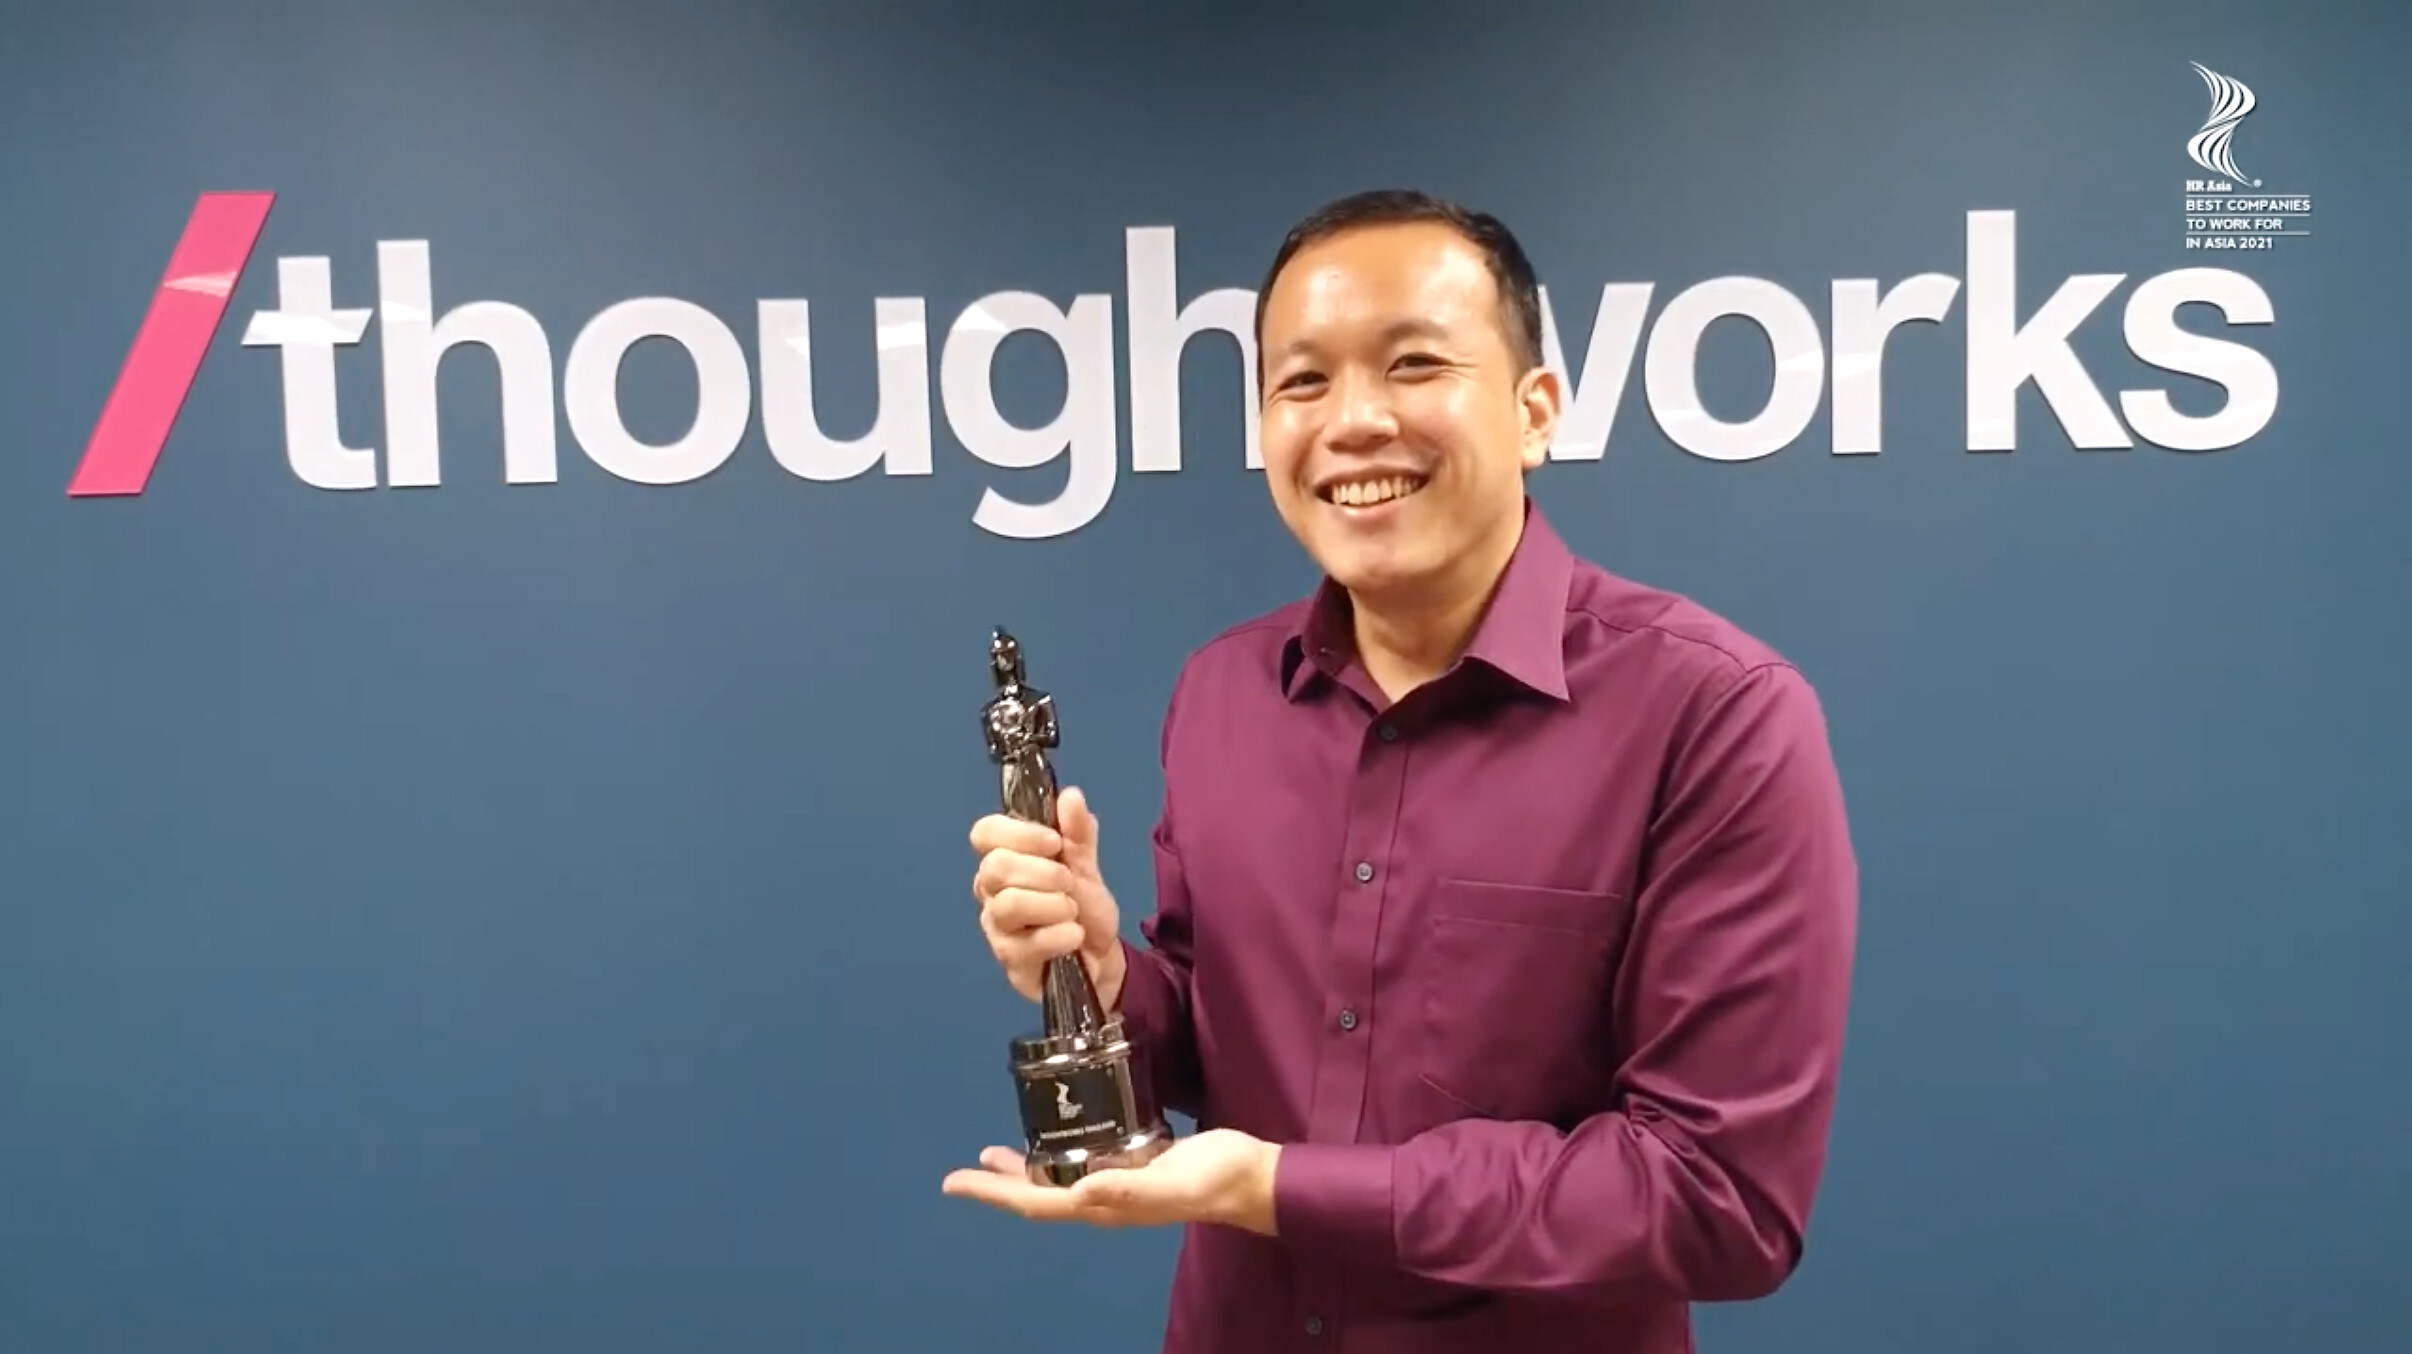 Thoughtworks ประเทศไทย ได้รับรางวัล "บริษัทที่น่าทำงานมากที่สุด" เป็นปีที่สองติดต่อกัน